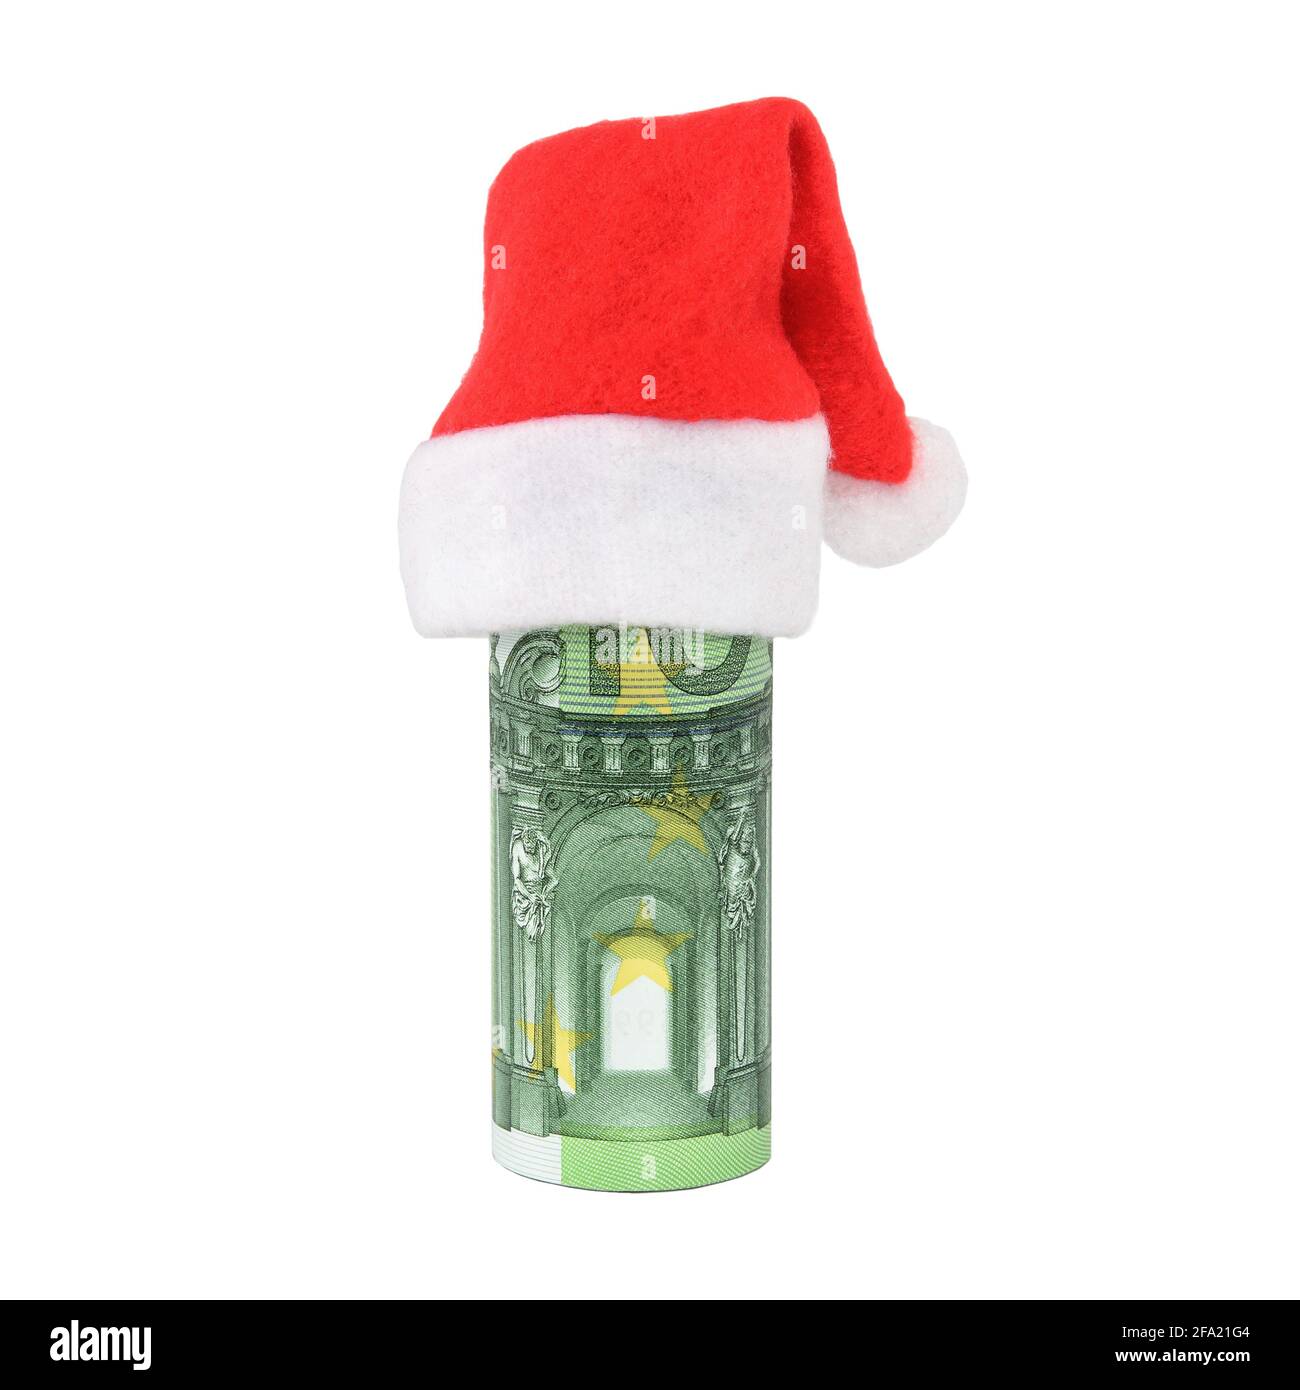 Gerollte Euro-Banknoten im Hut des Weihnachtsmannes. Weihnachtsfeiertage Geschenkkonzept. Nahaufnahme, isoliert auf weißem Hintergrund. Stockfoto